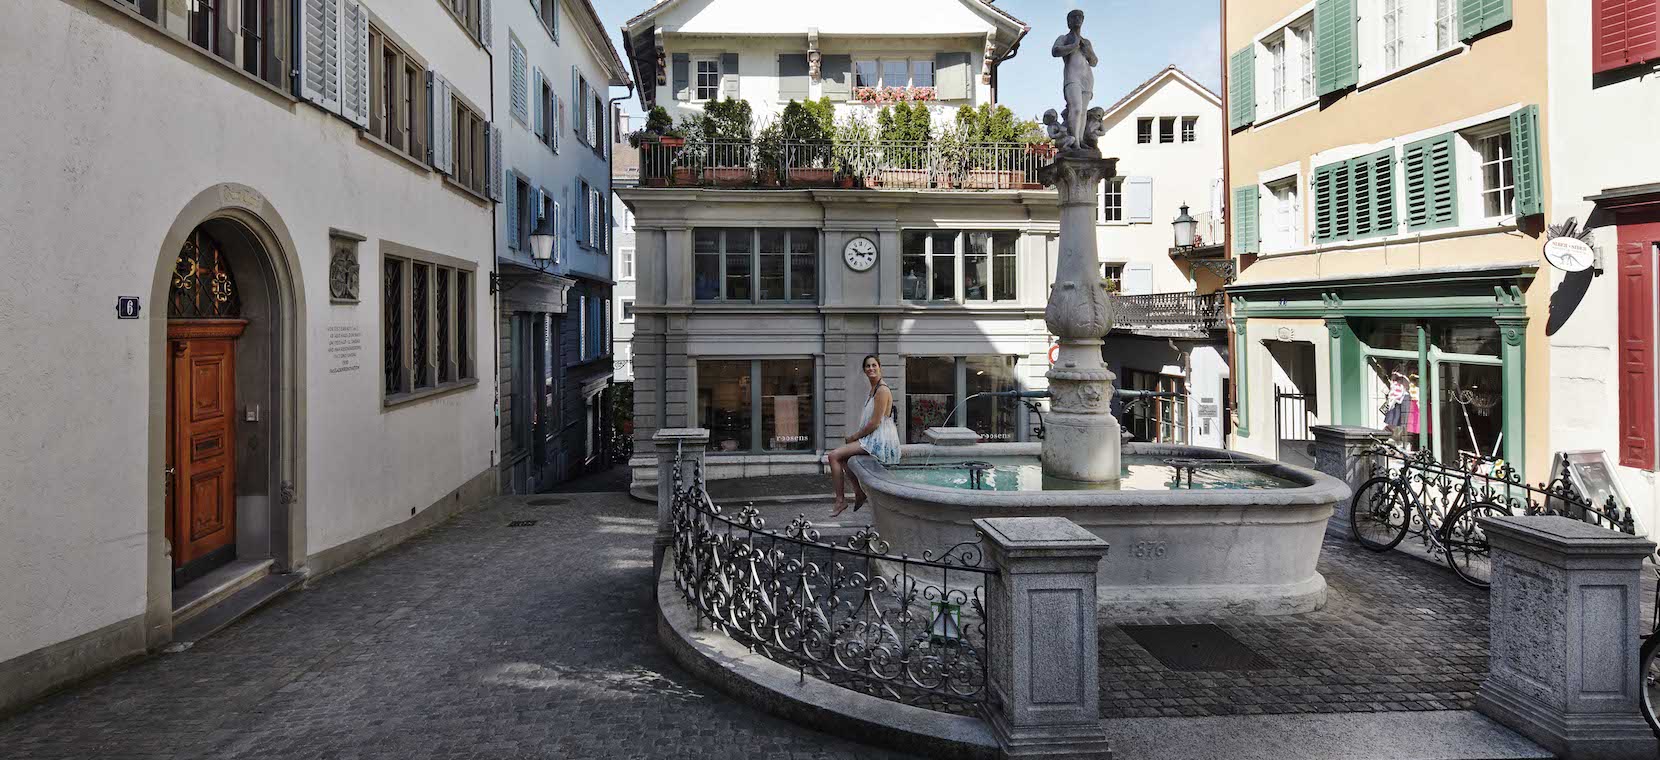 Widder hotel , Zurich / Switzerland 